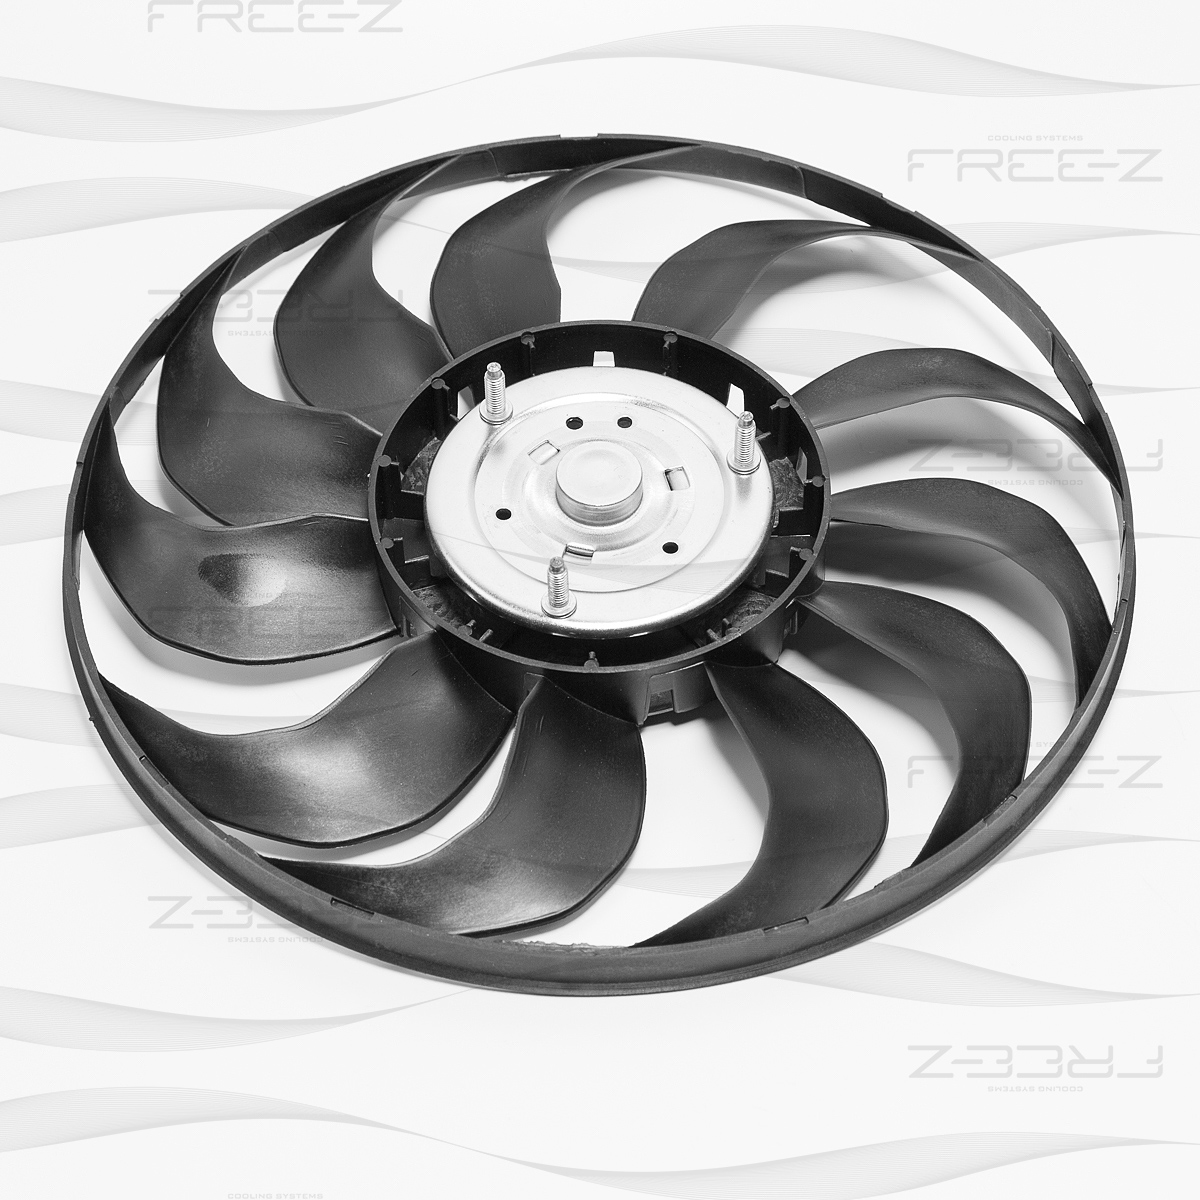 Вентилятор радиатора FREE-Z                KM0154